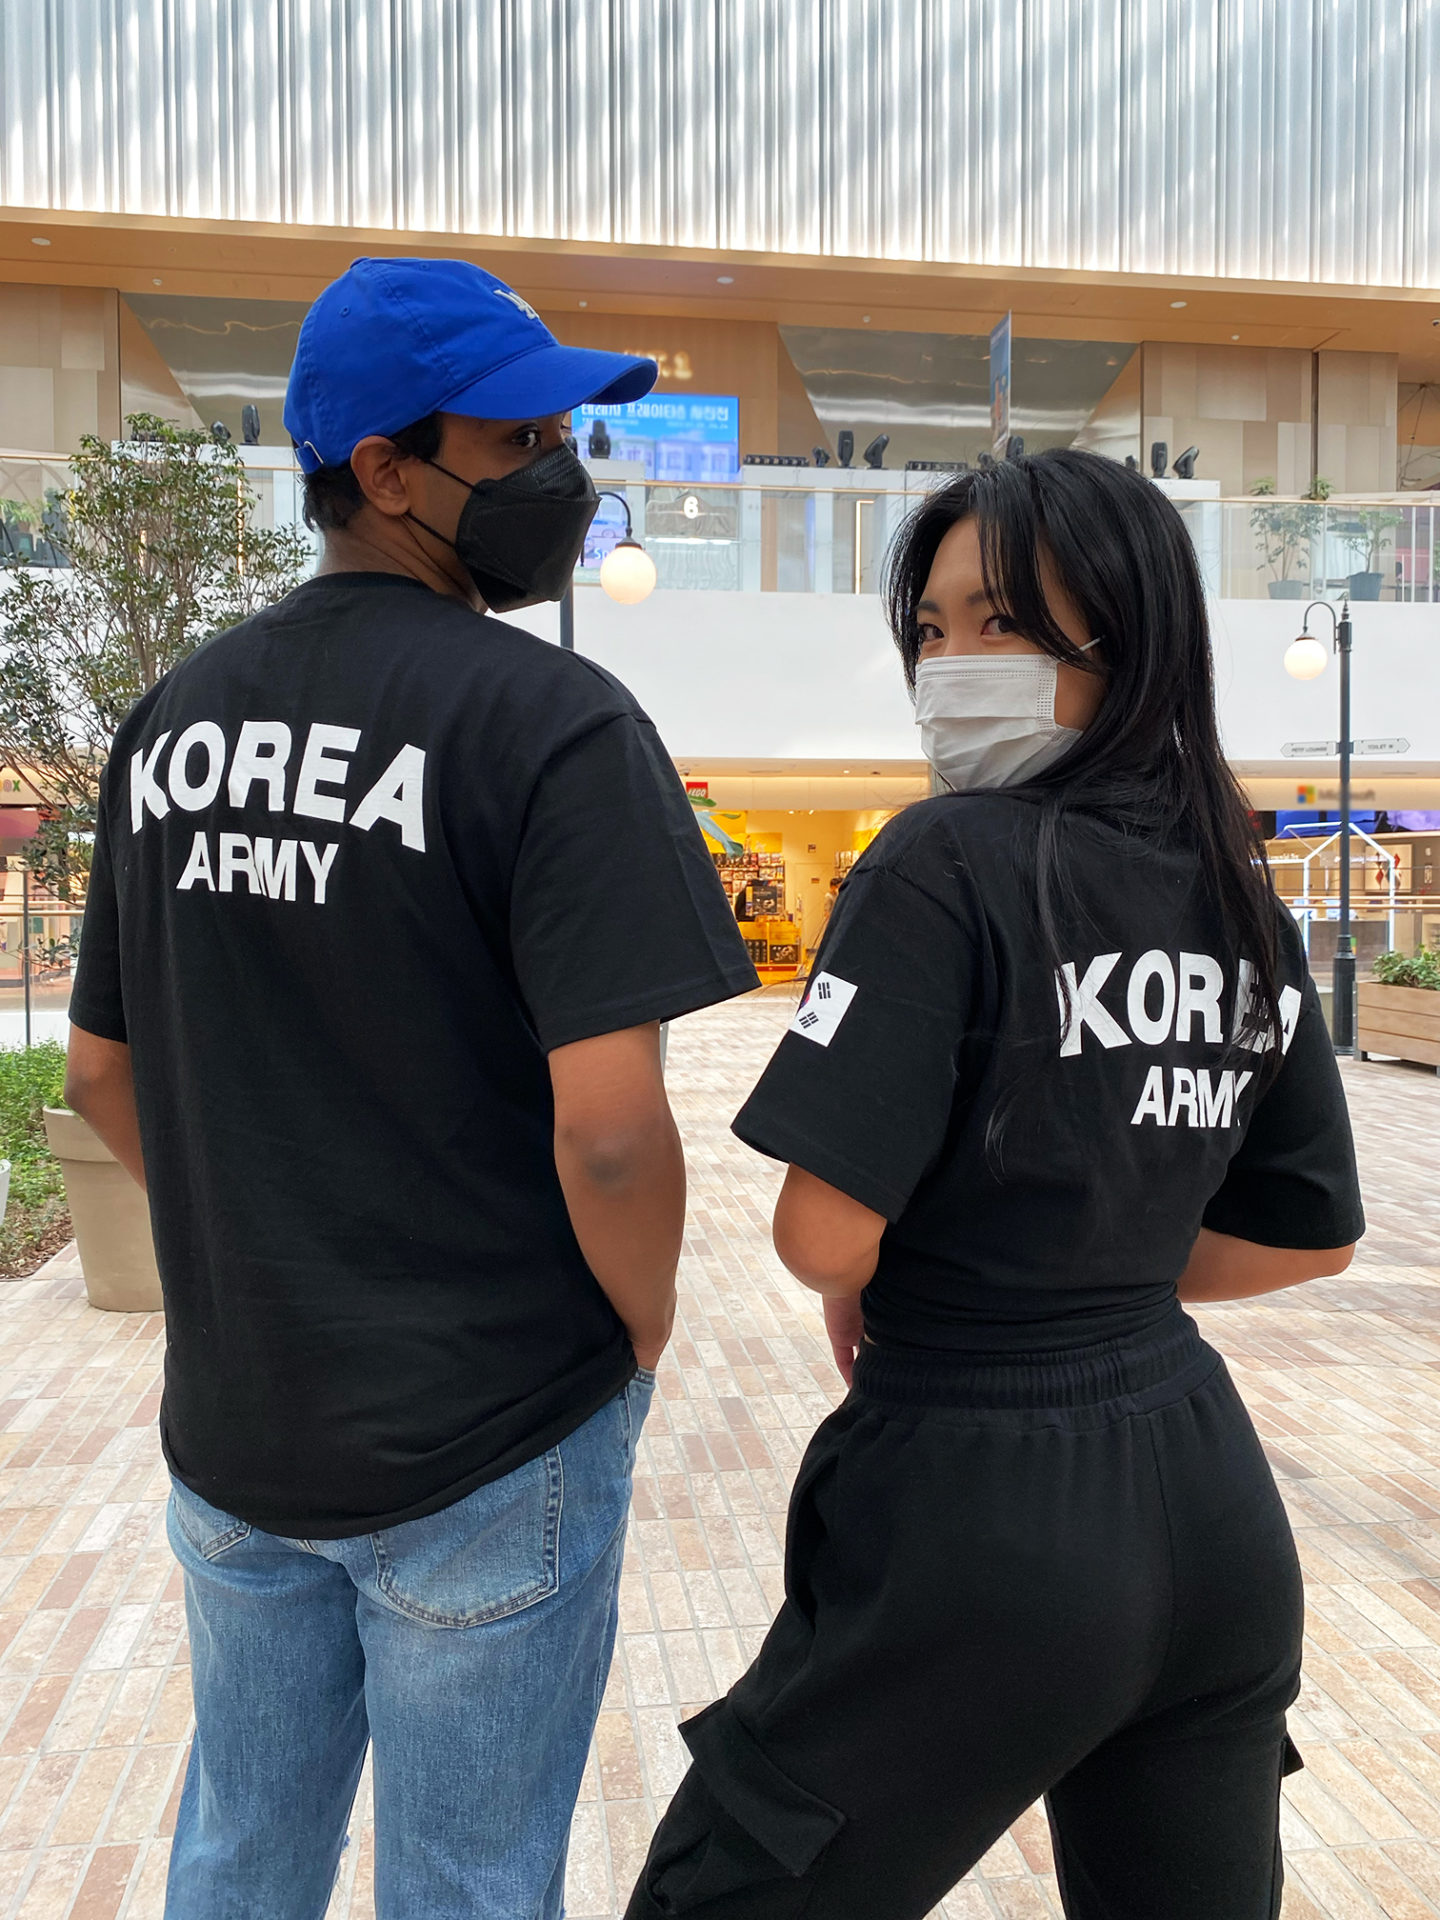 Schrijf een brief openbaar overstroming ROKA T-Shirt (Korean Army) - NAKD SEOUL